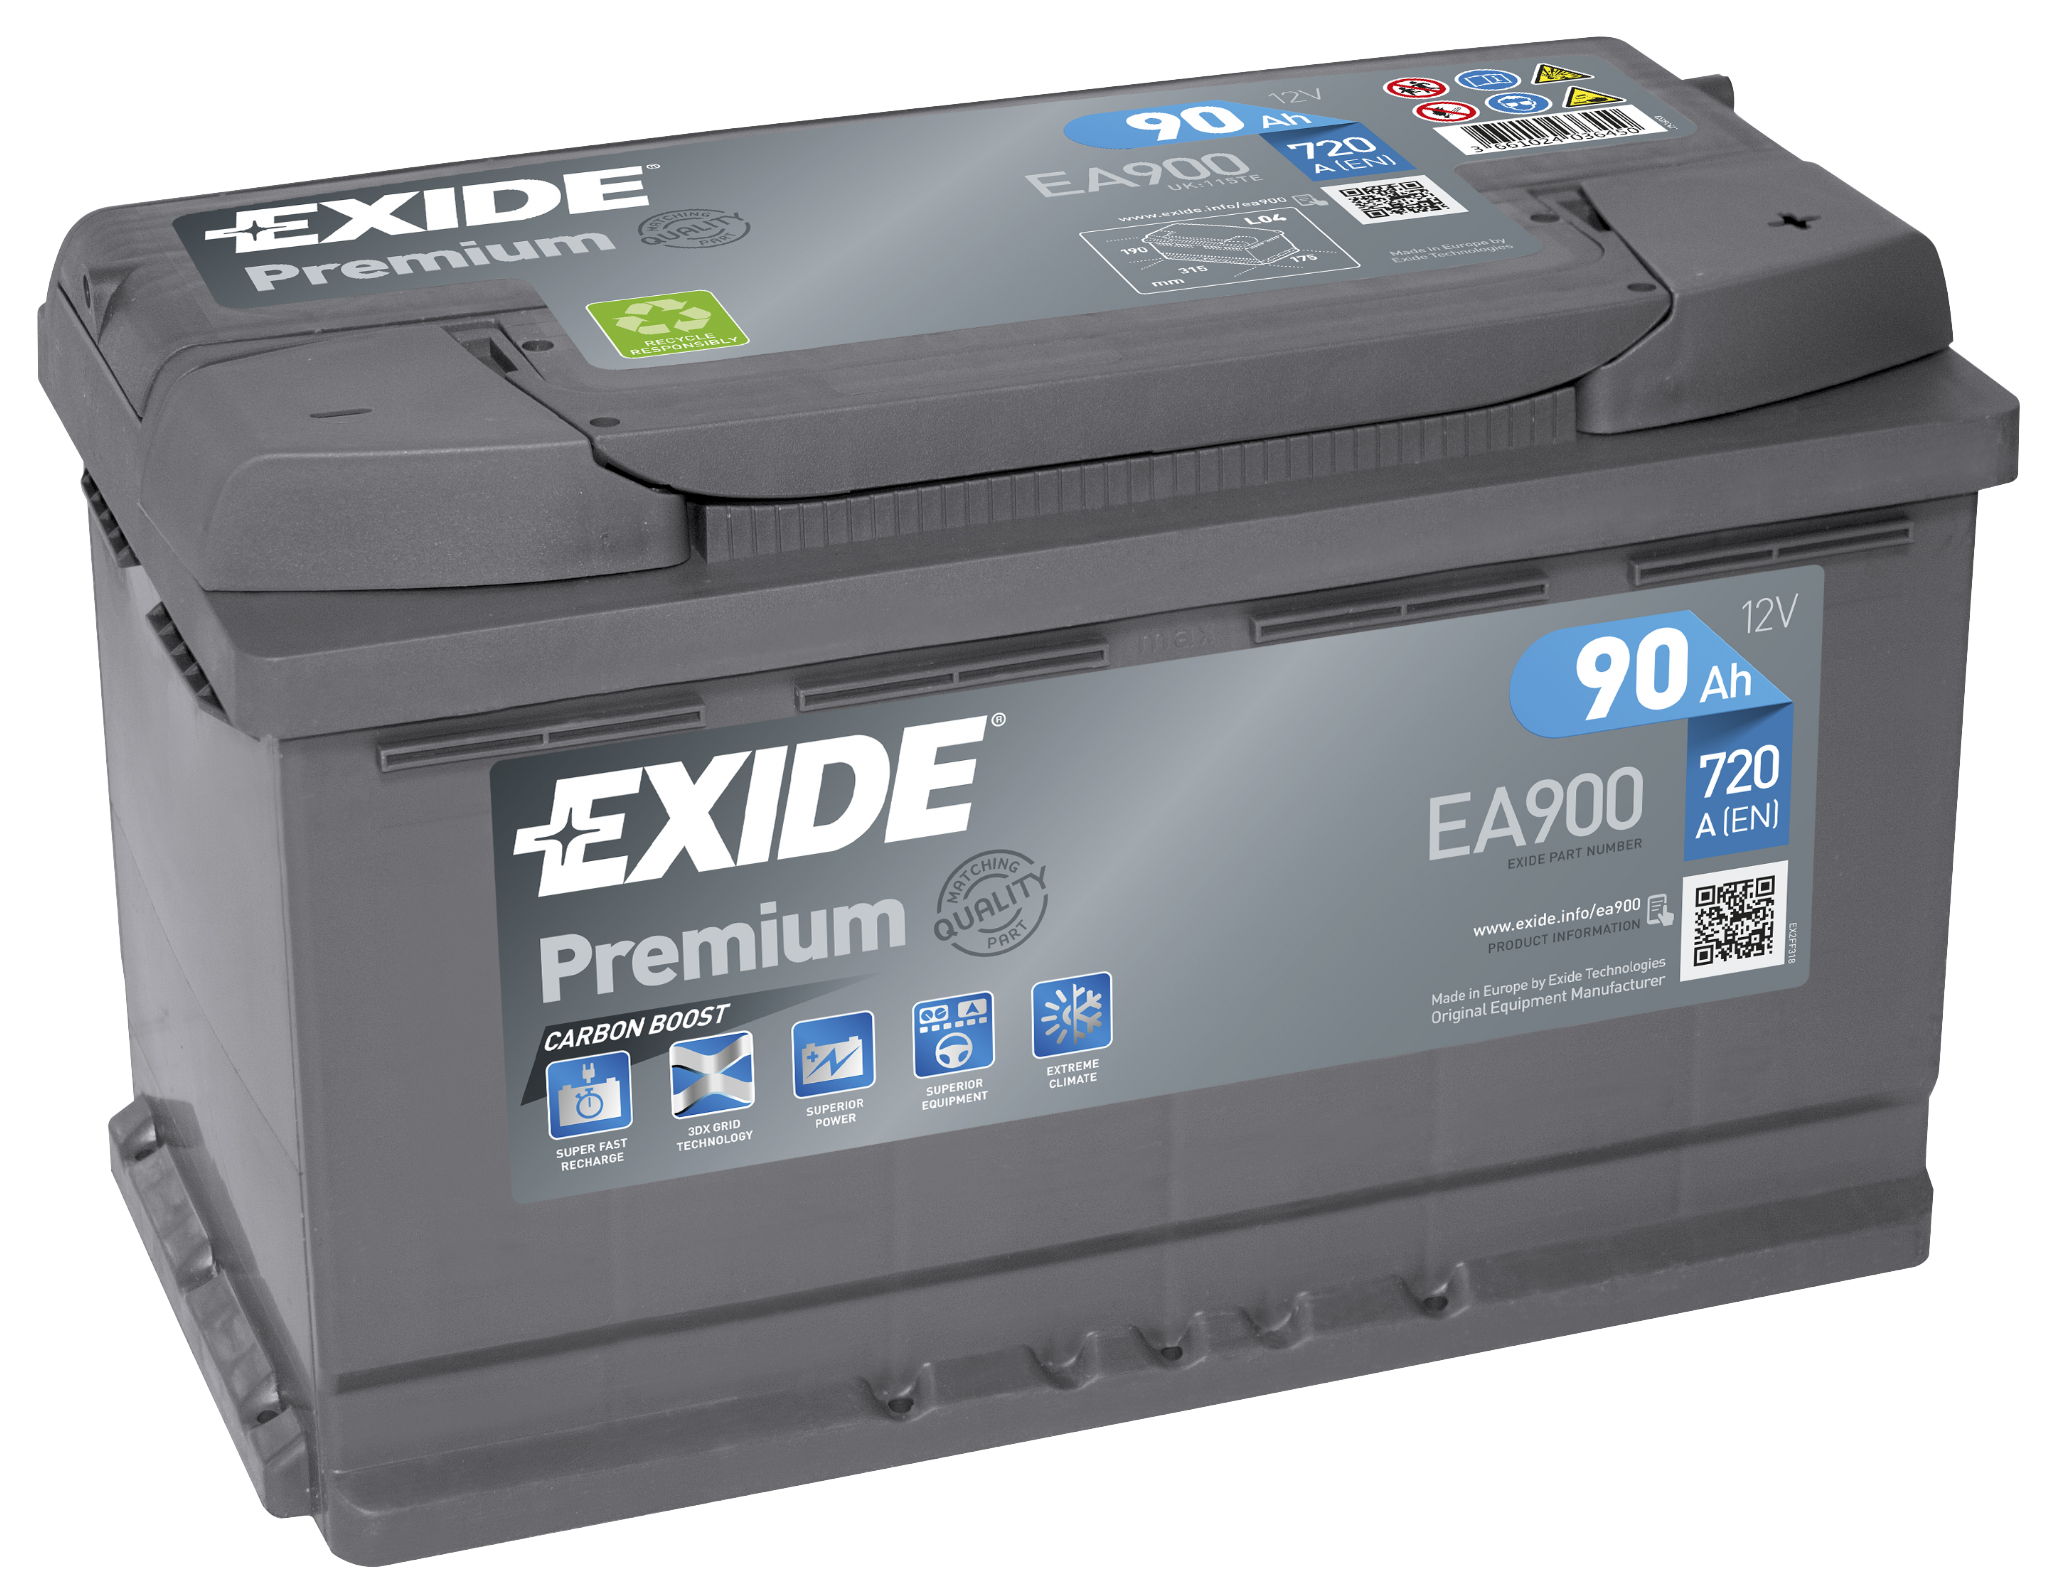 Exide Automotive Batteries PNG HD Quality